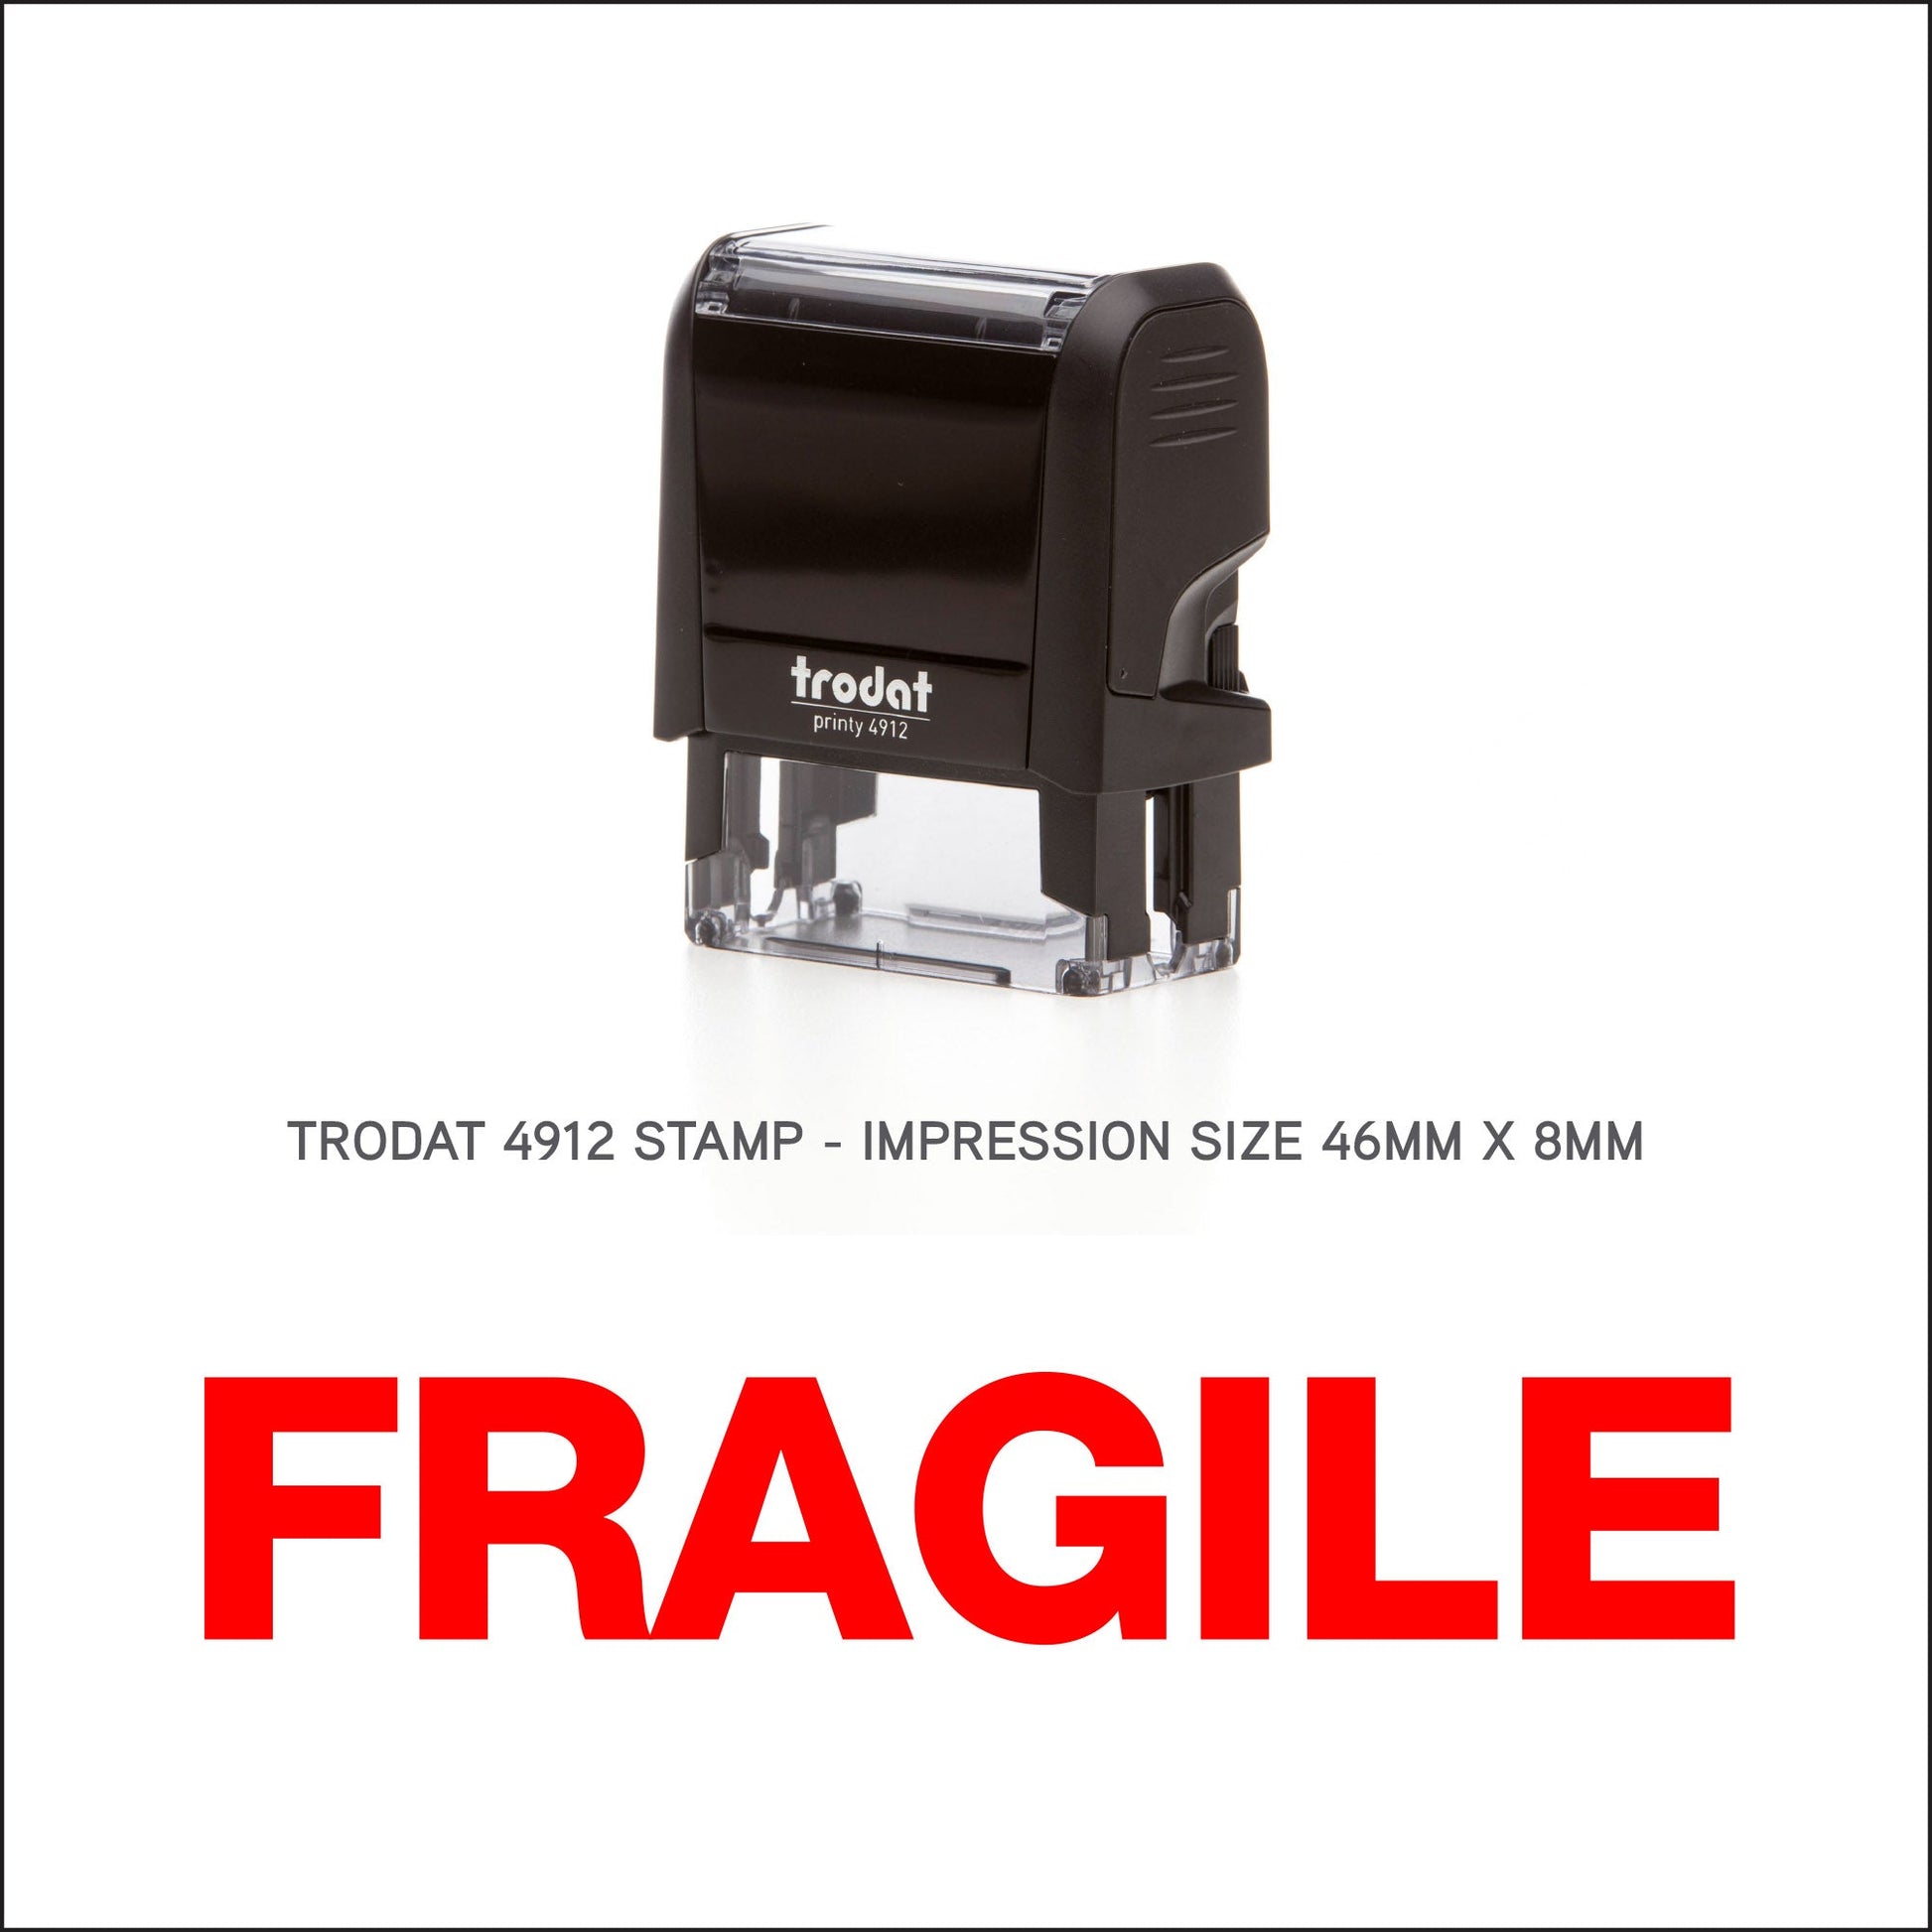 Fragile Rubber Stamp - Trodat 4912 - 45mm x 18mm Impression